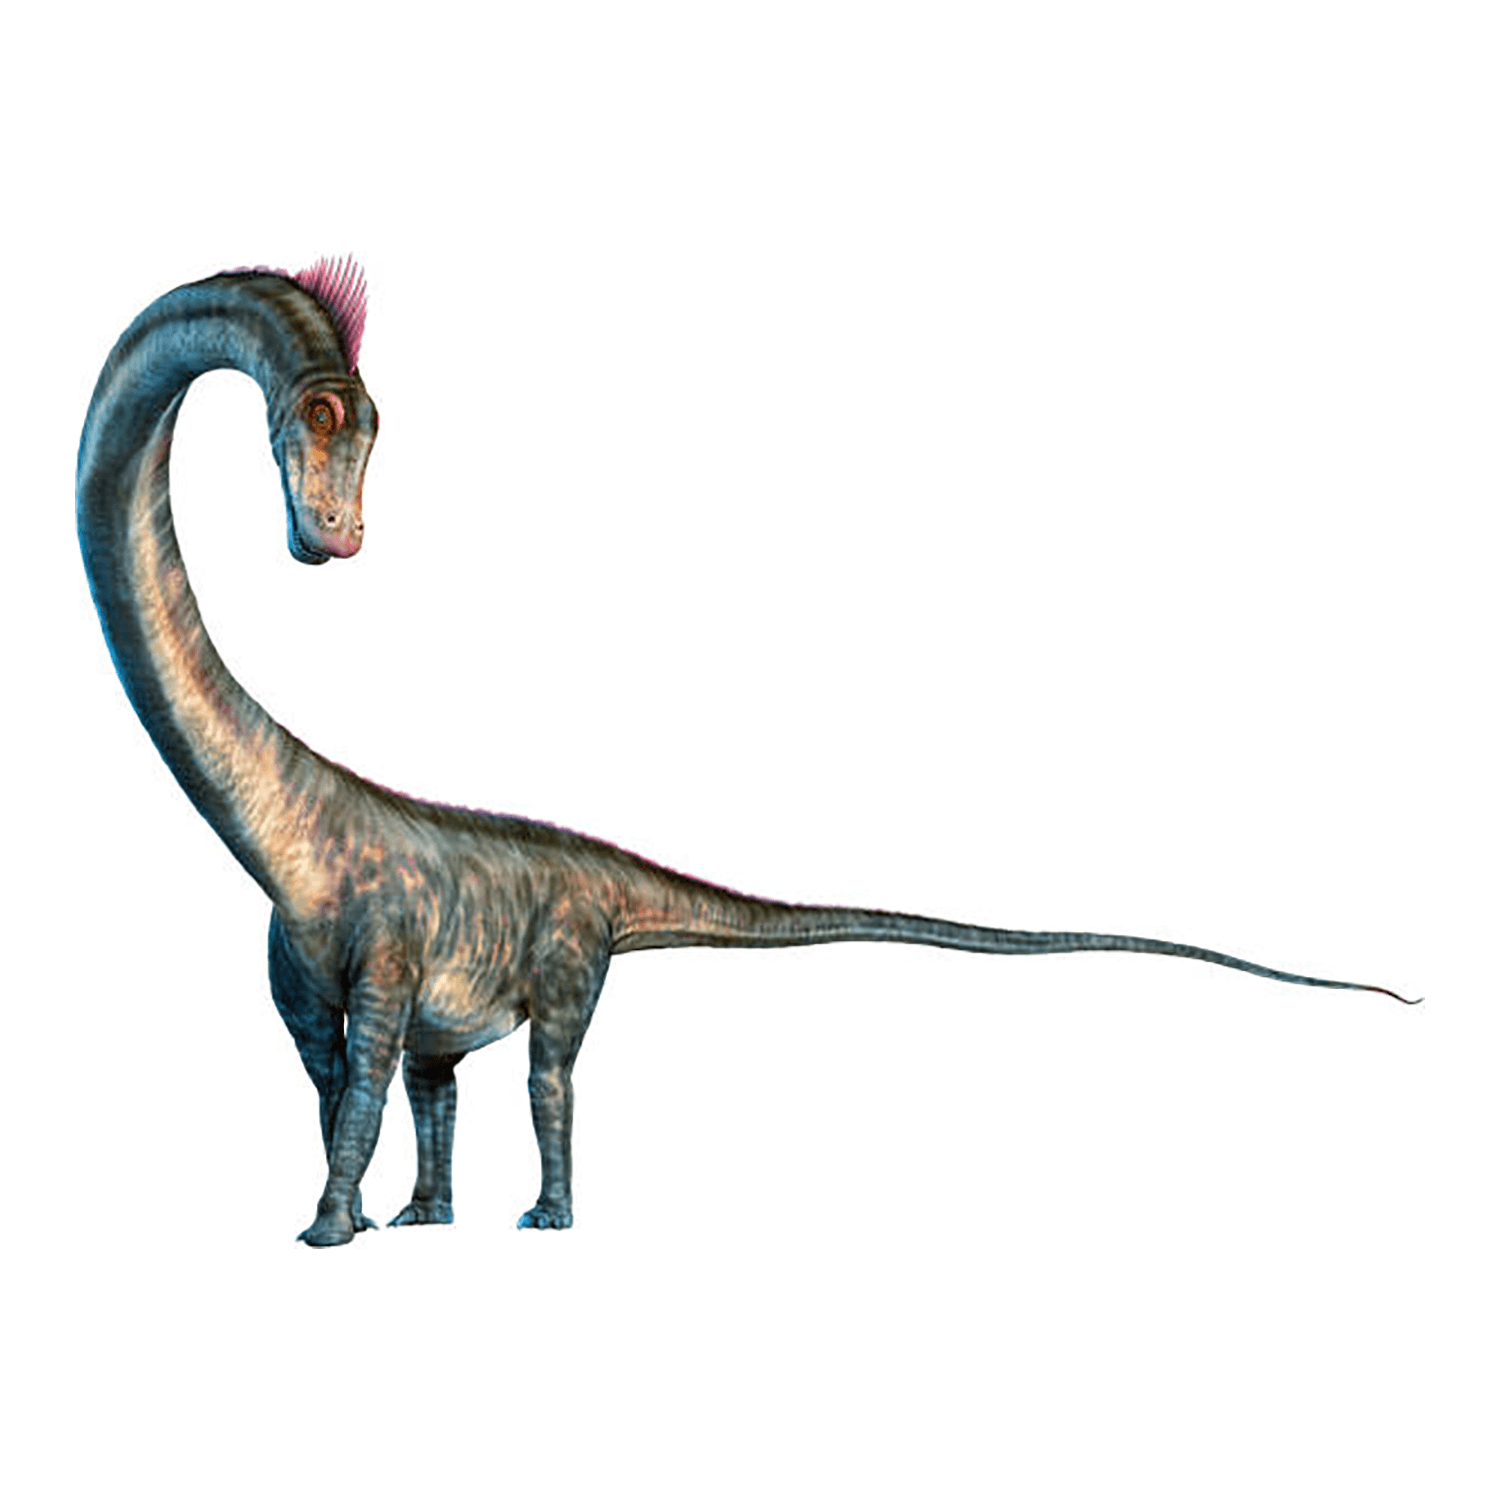 バロサウルス